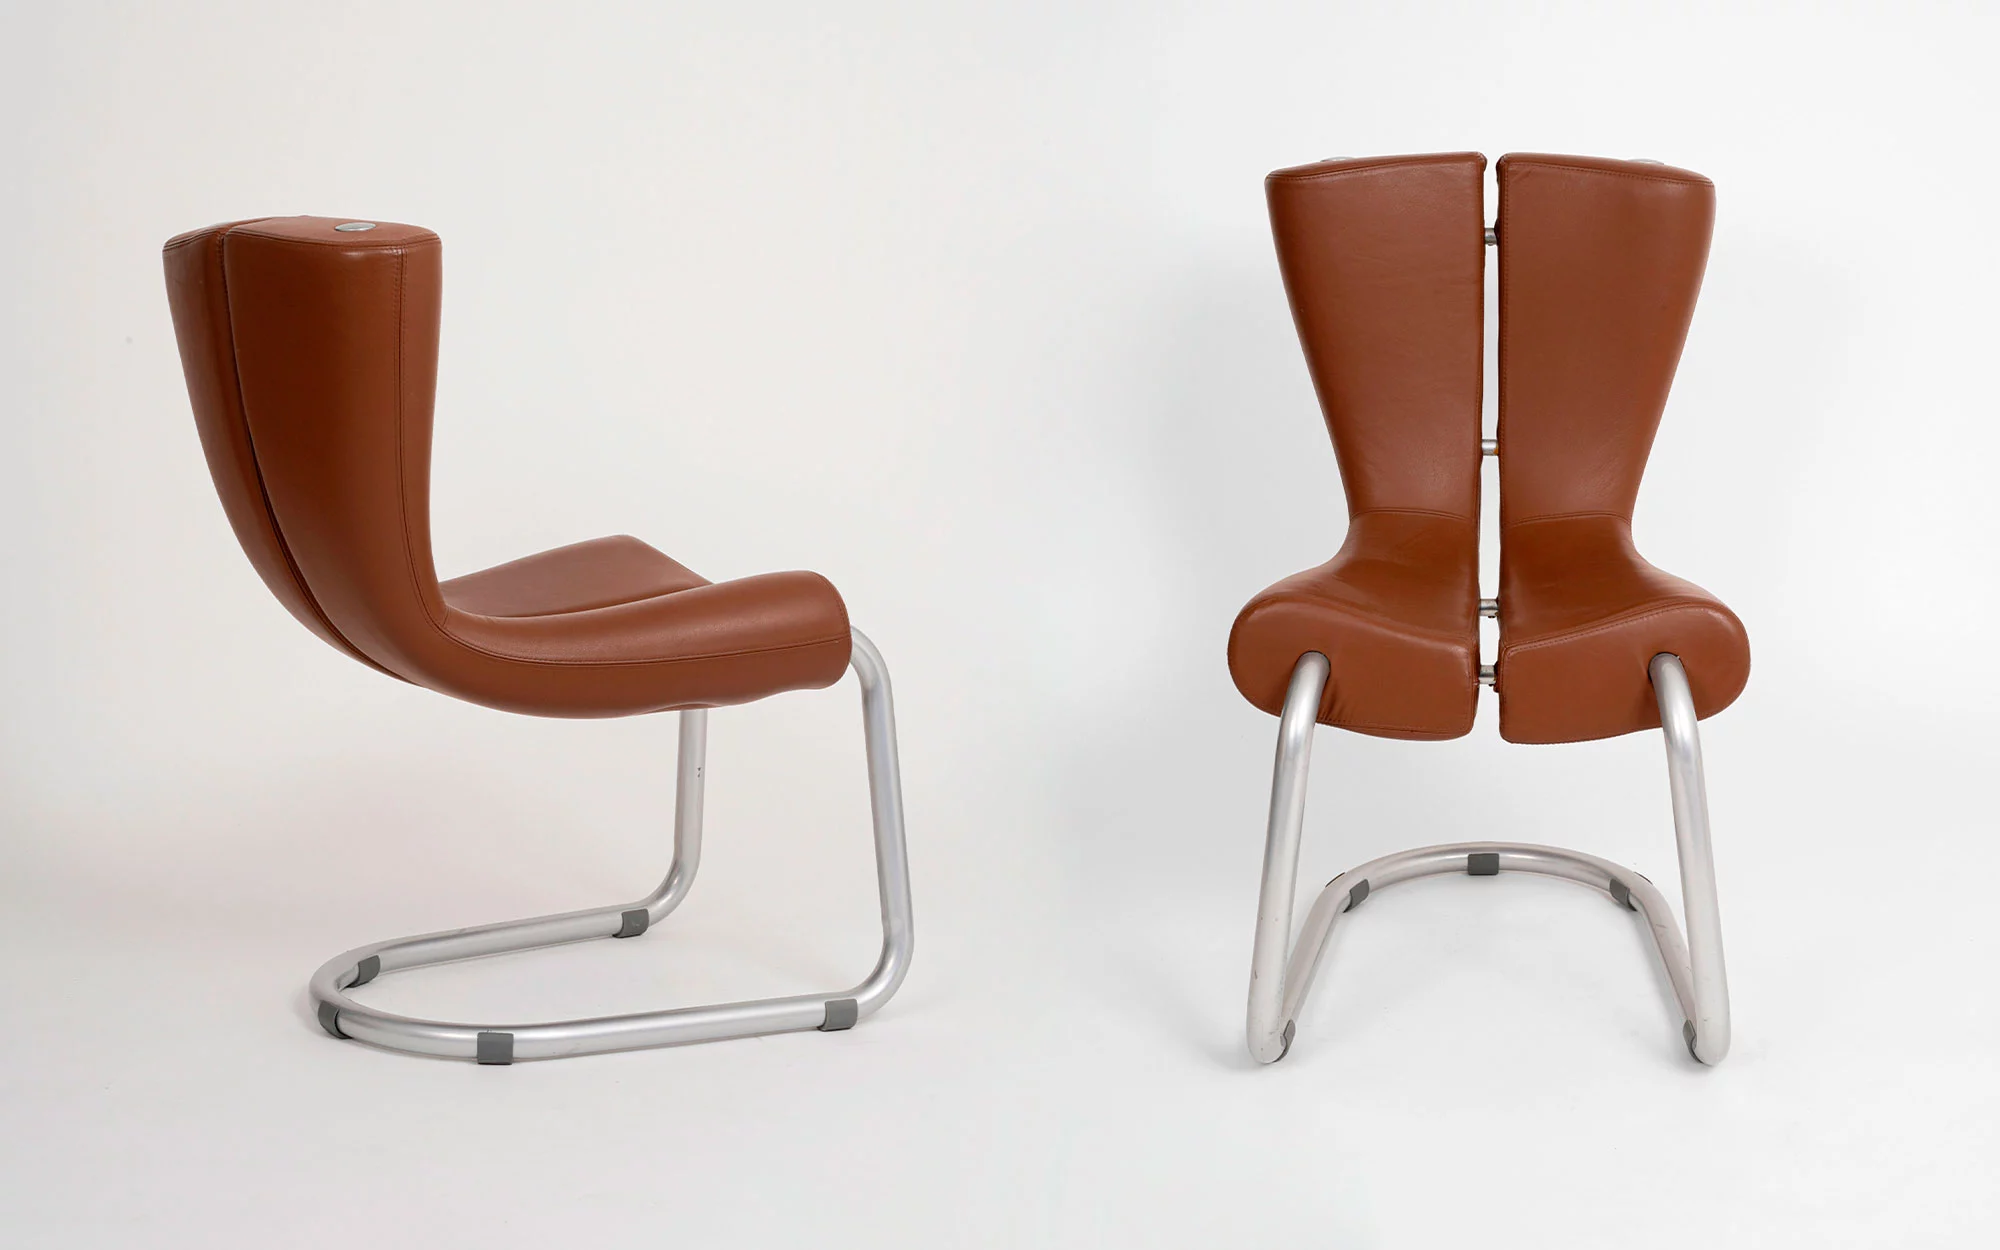 Komed chair - Marc Newson - Chair - Galerie kreo